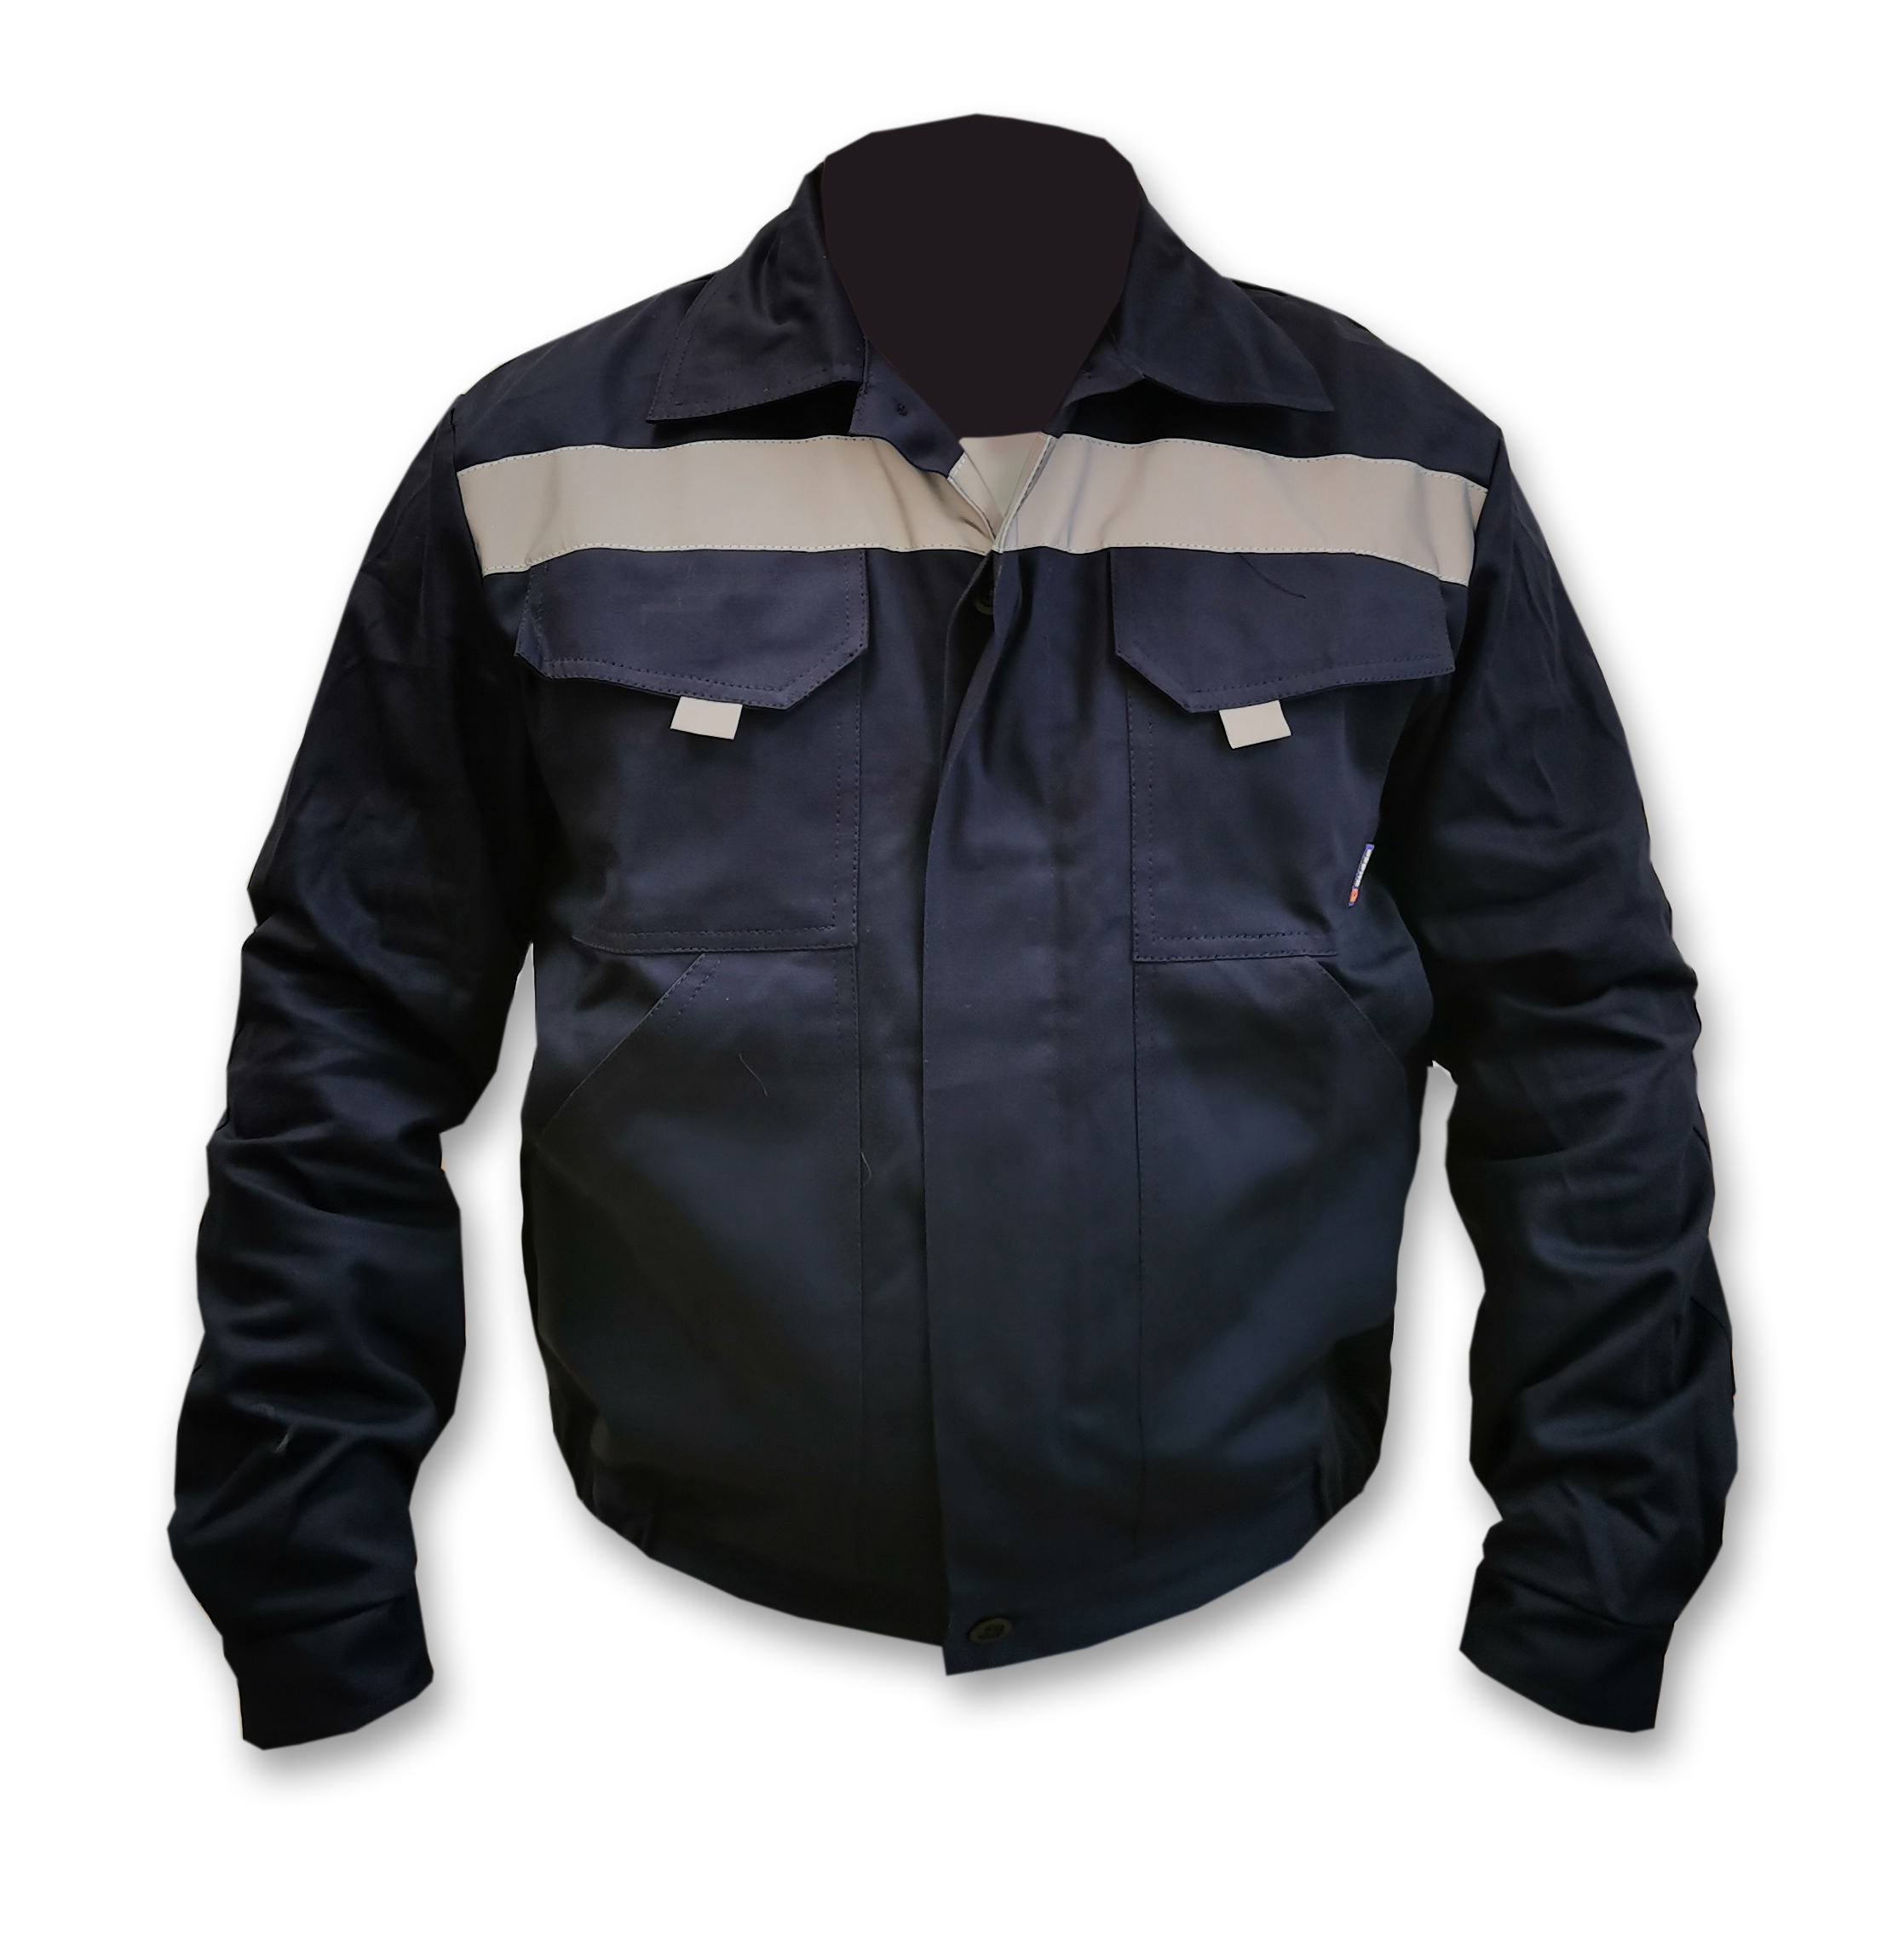 83411736 Куртка Техник, темно-синяя (разм. 48-50, рост 170-176) STLM-0041196 Santreyd